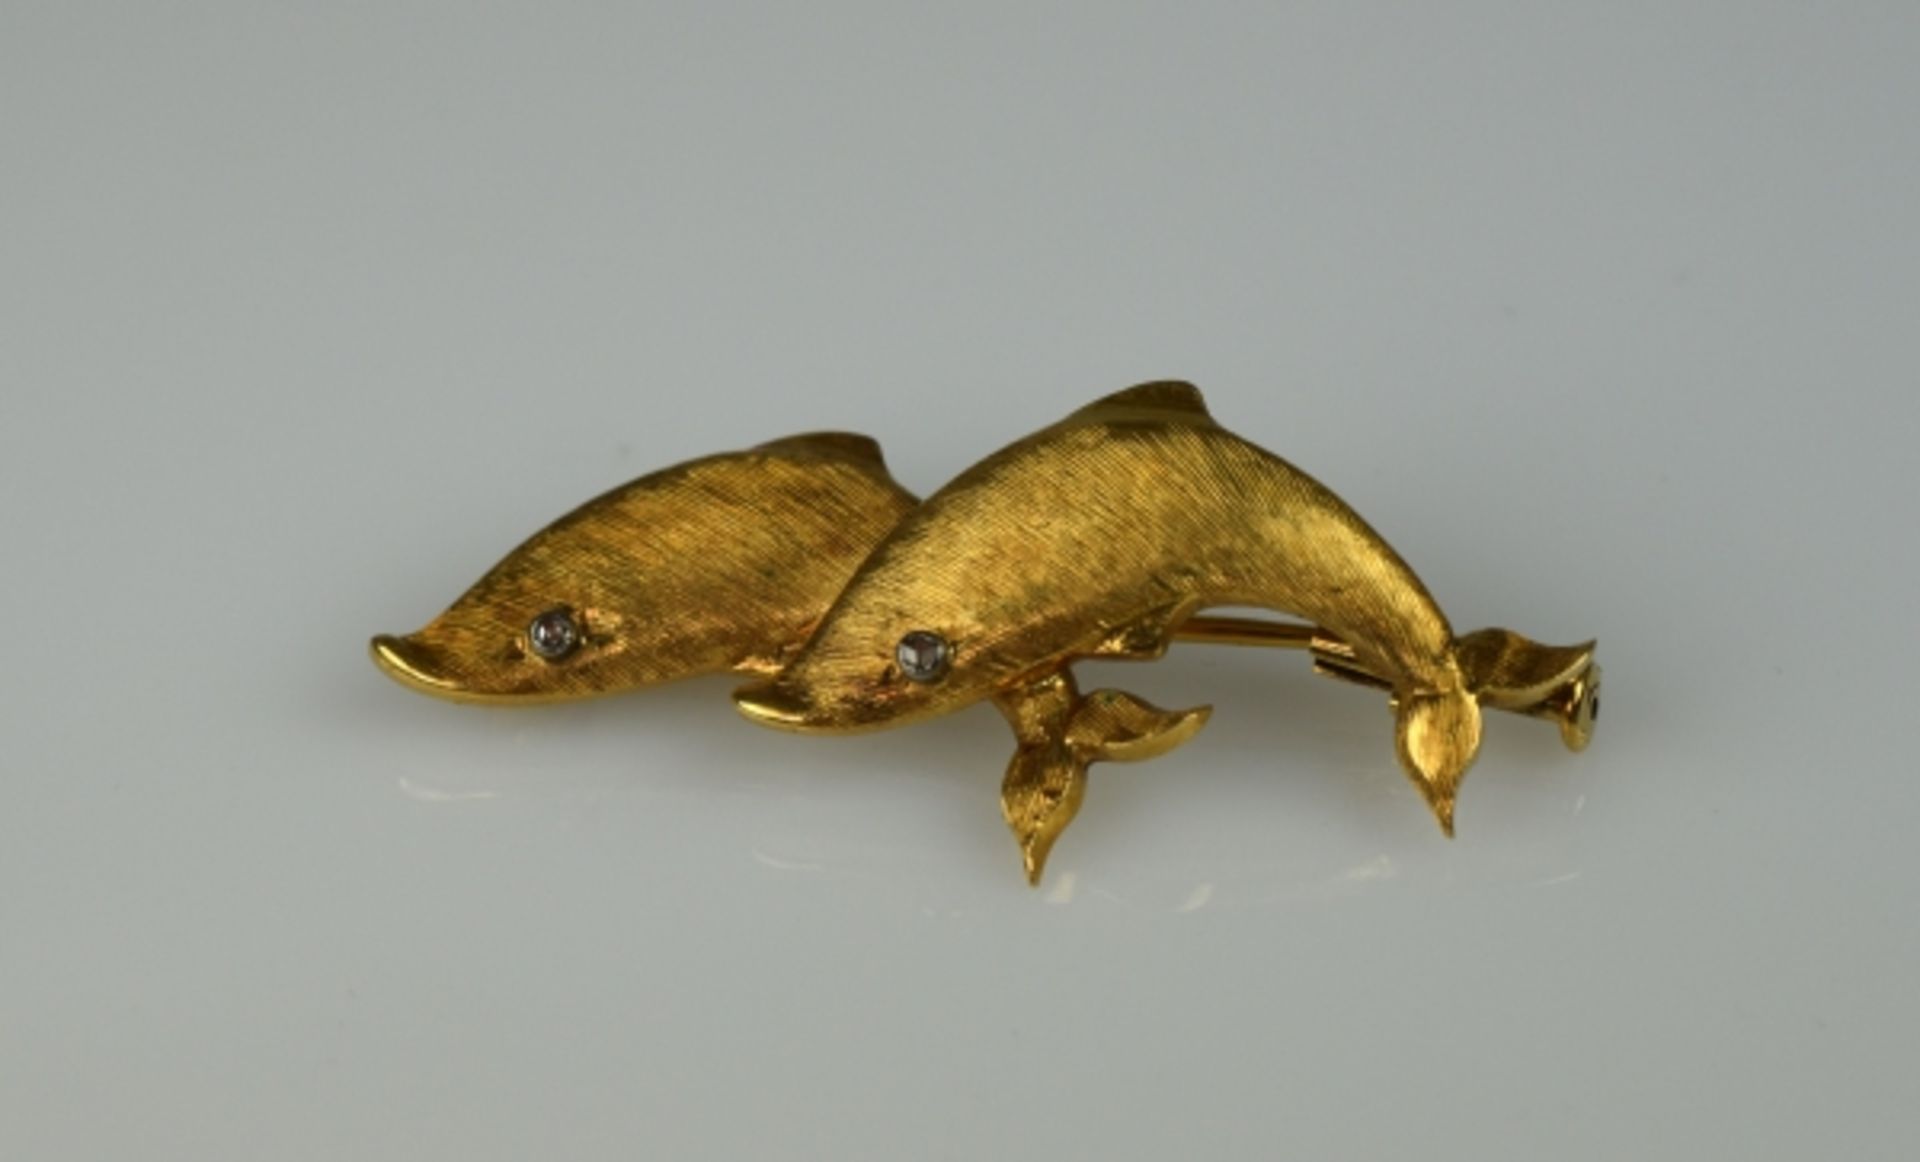 BROSCHE zwei ziselierte Delphine mit kleinen Diamantaugen, Gelbgold 18ct, 7g, D 50mm